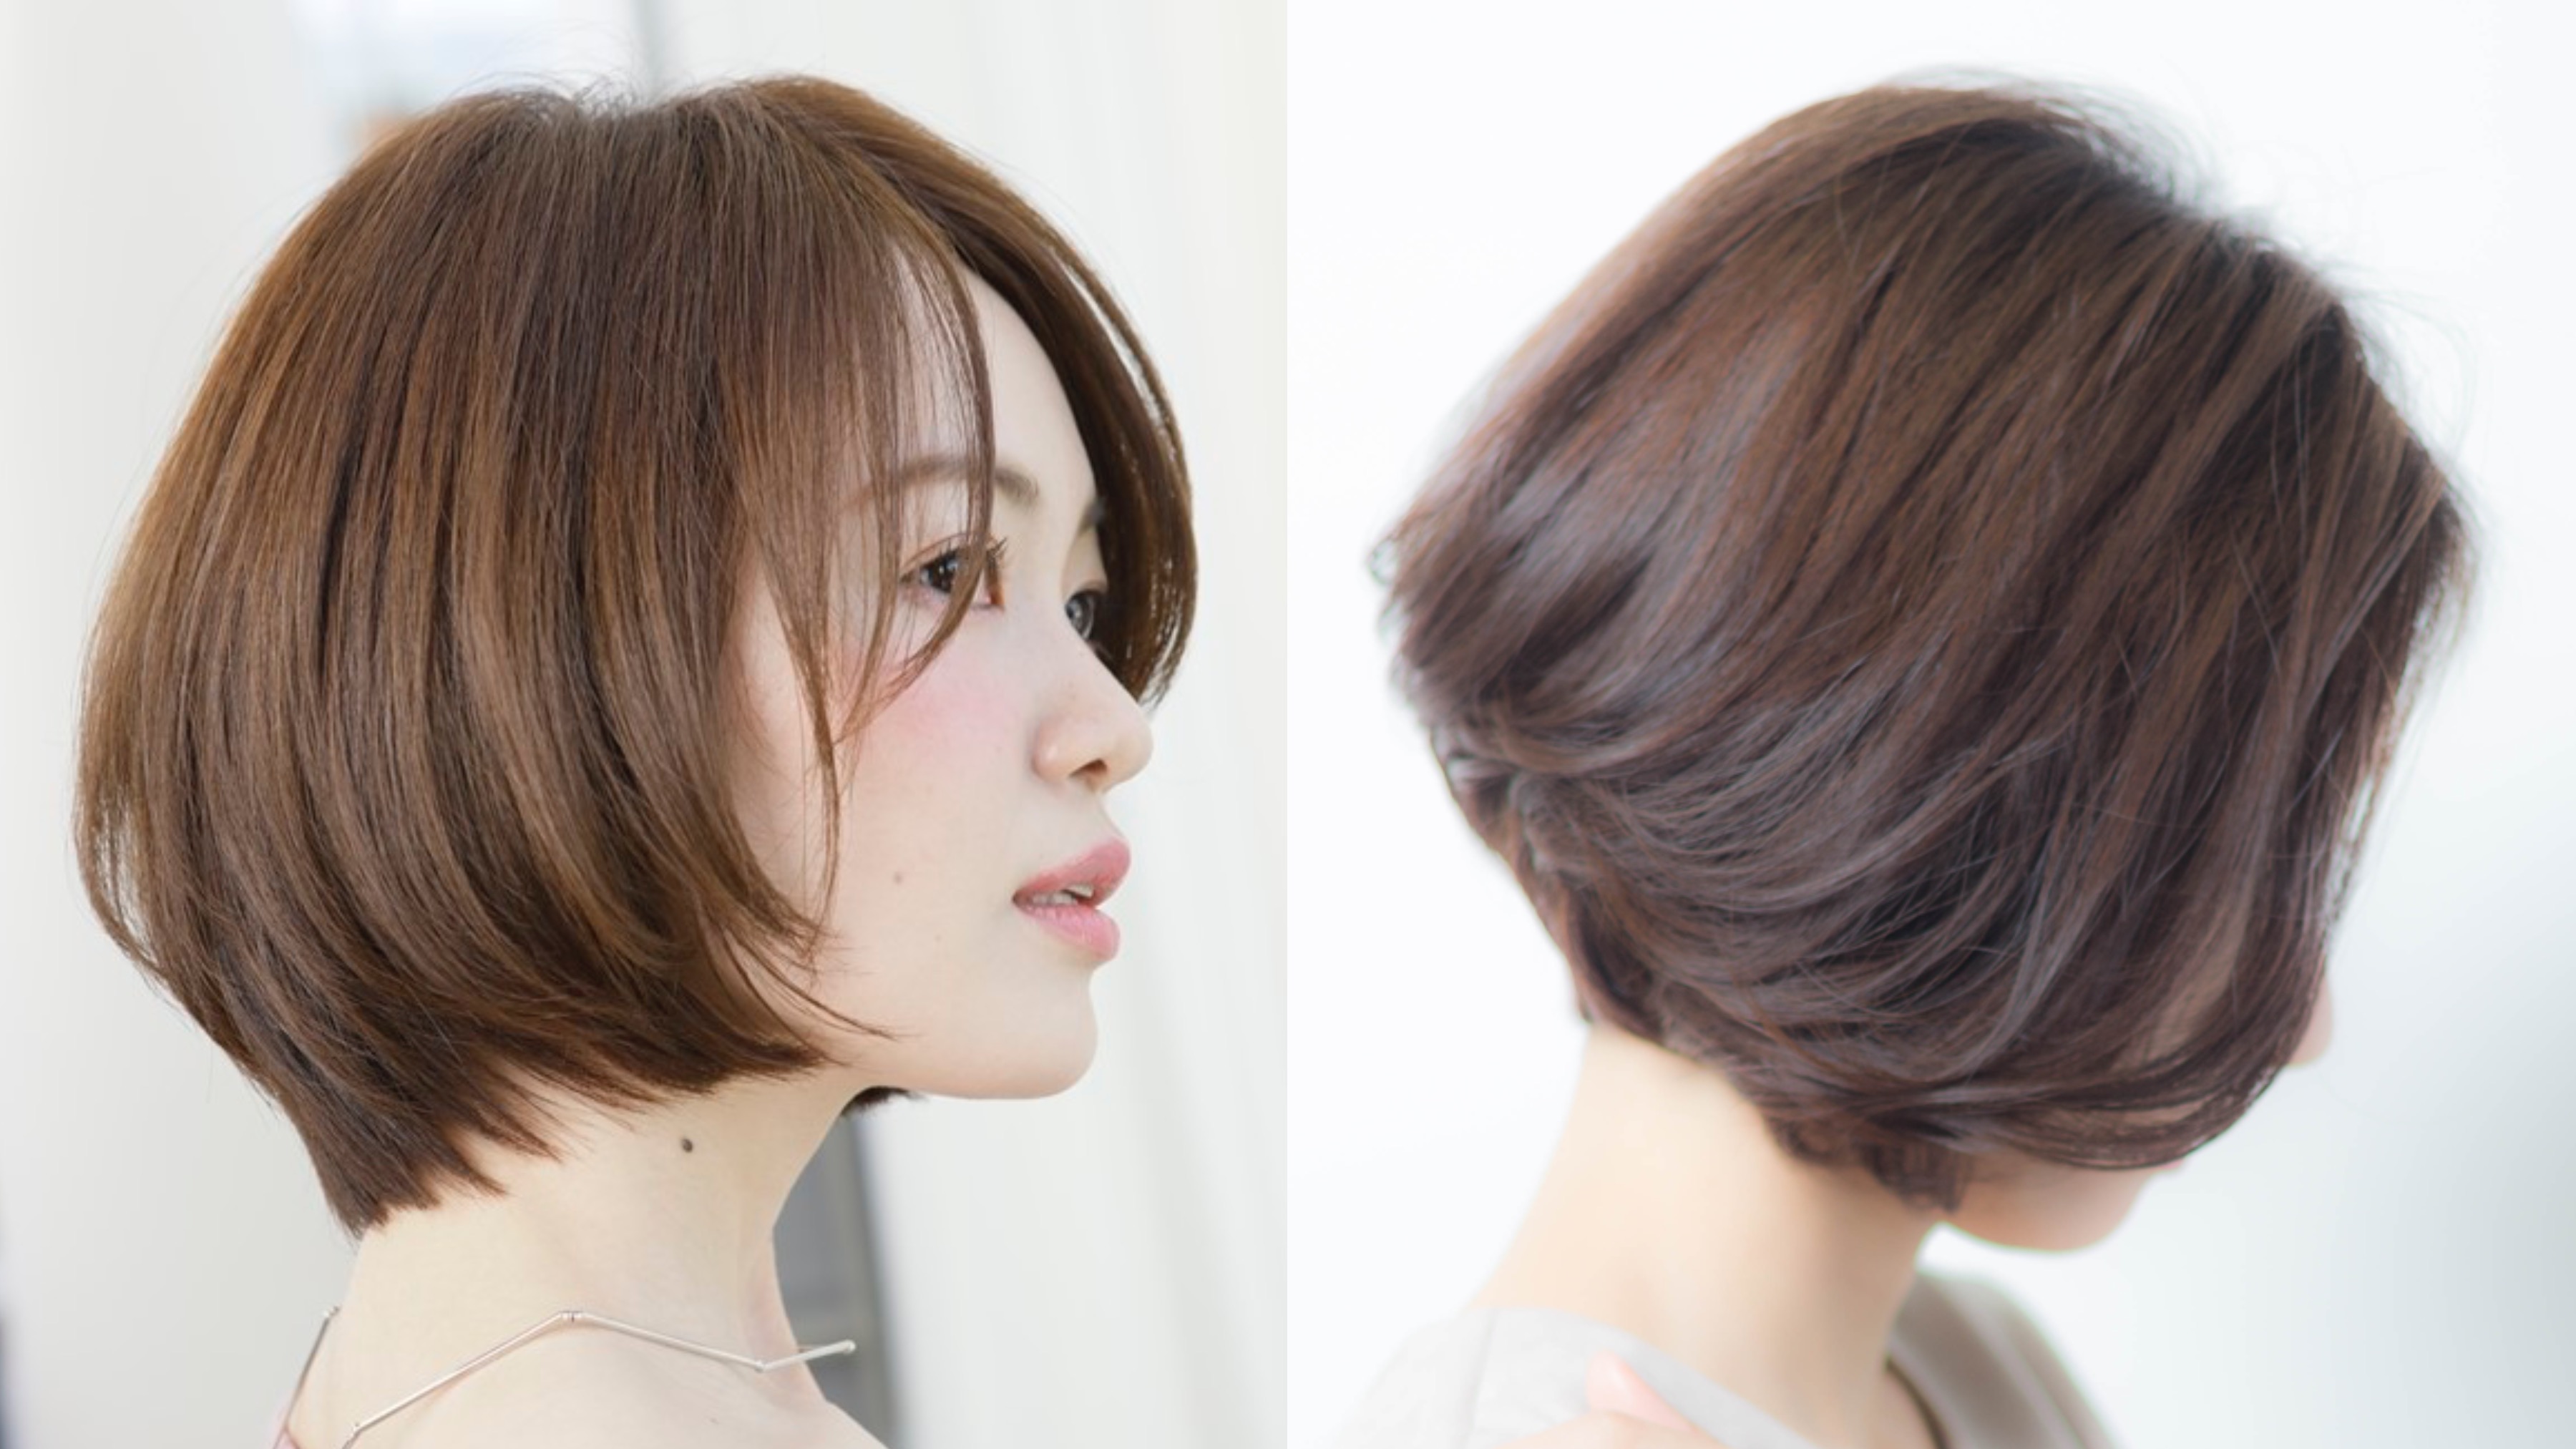 21年秋 40代の髪型のお悩みを 素敵に生かすボブのヘアカタログ 似合わせカットが上手い東京の美容師 美容室minx銀座 蛭田のブログ